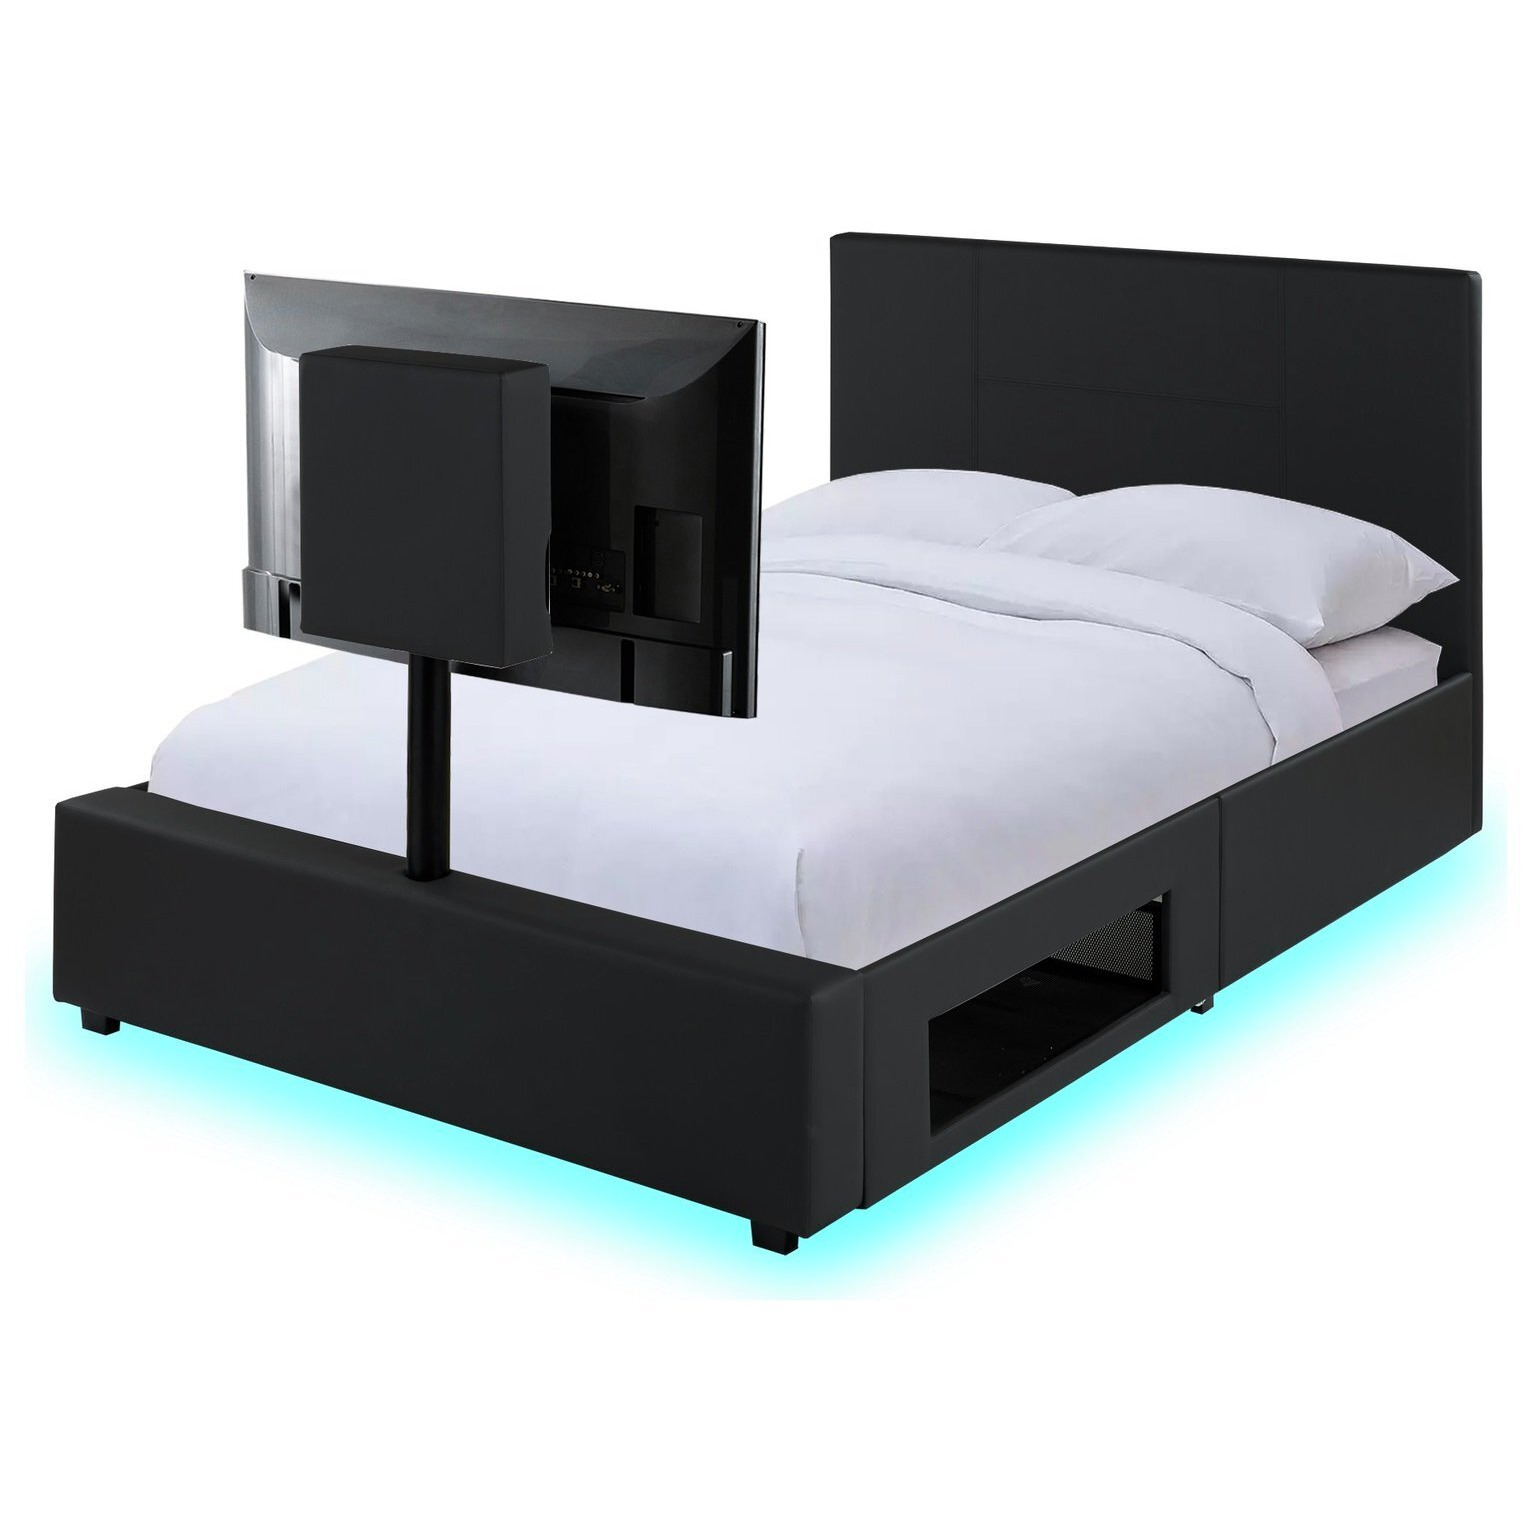 XR Living Ava Double TV Bed Frame - Black - image 1